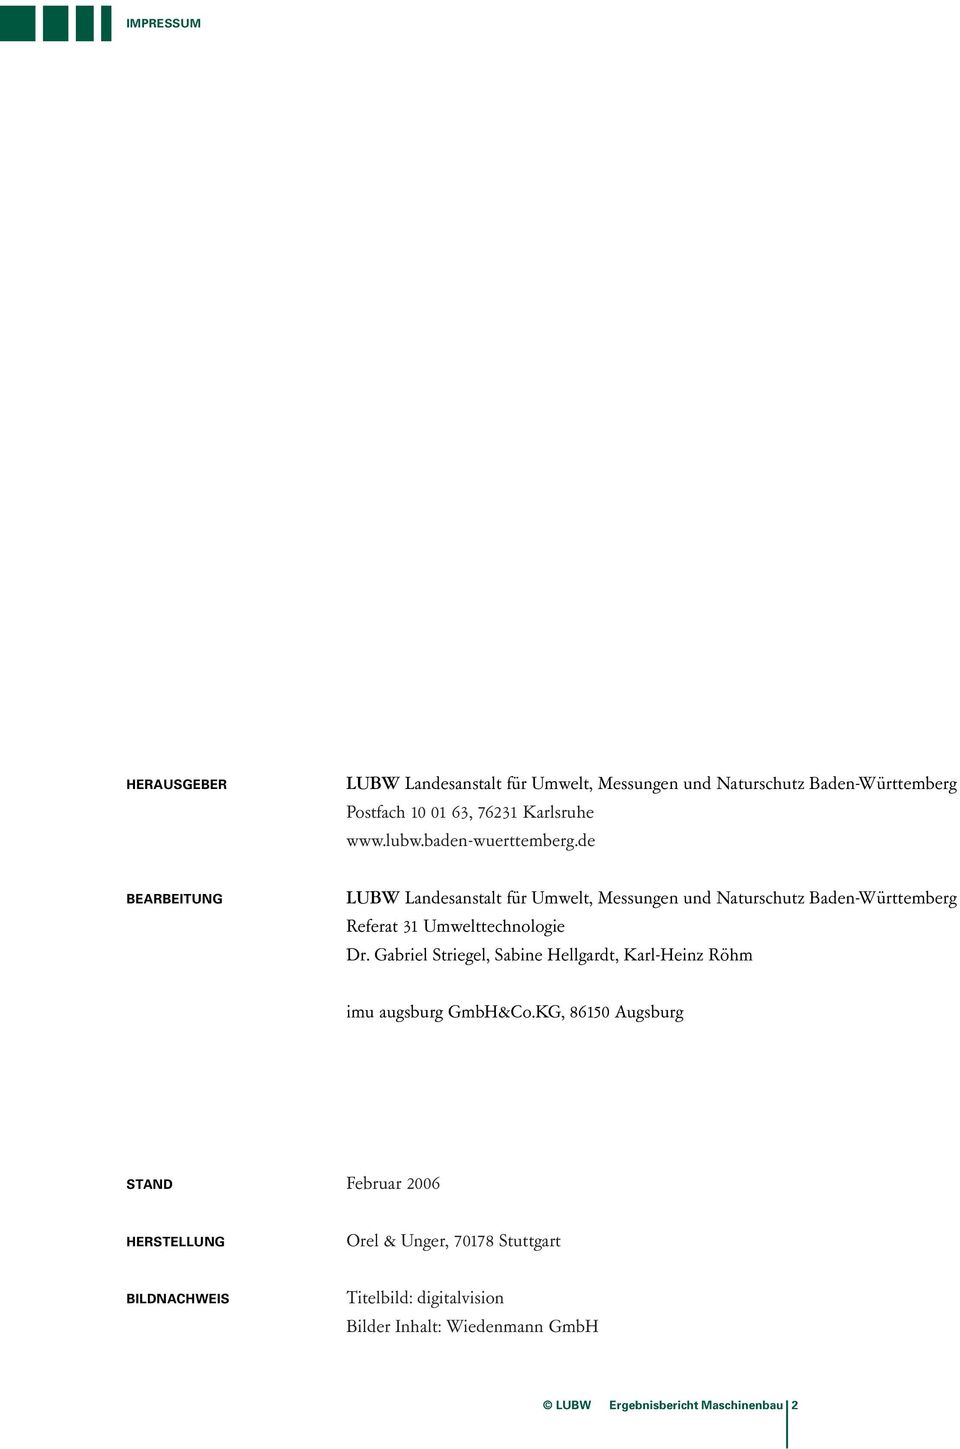 de BEARBEITUNG LUBW Landesanstalt für Umwelt, Messungen und Naturschutz Baden-Württemberg Referat 31 Umwelttechnologie Dr.